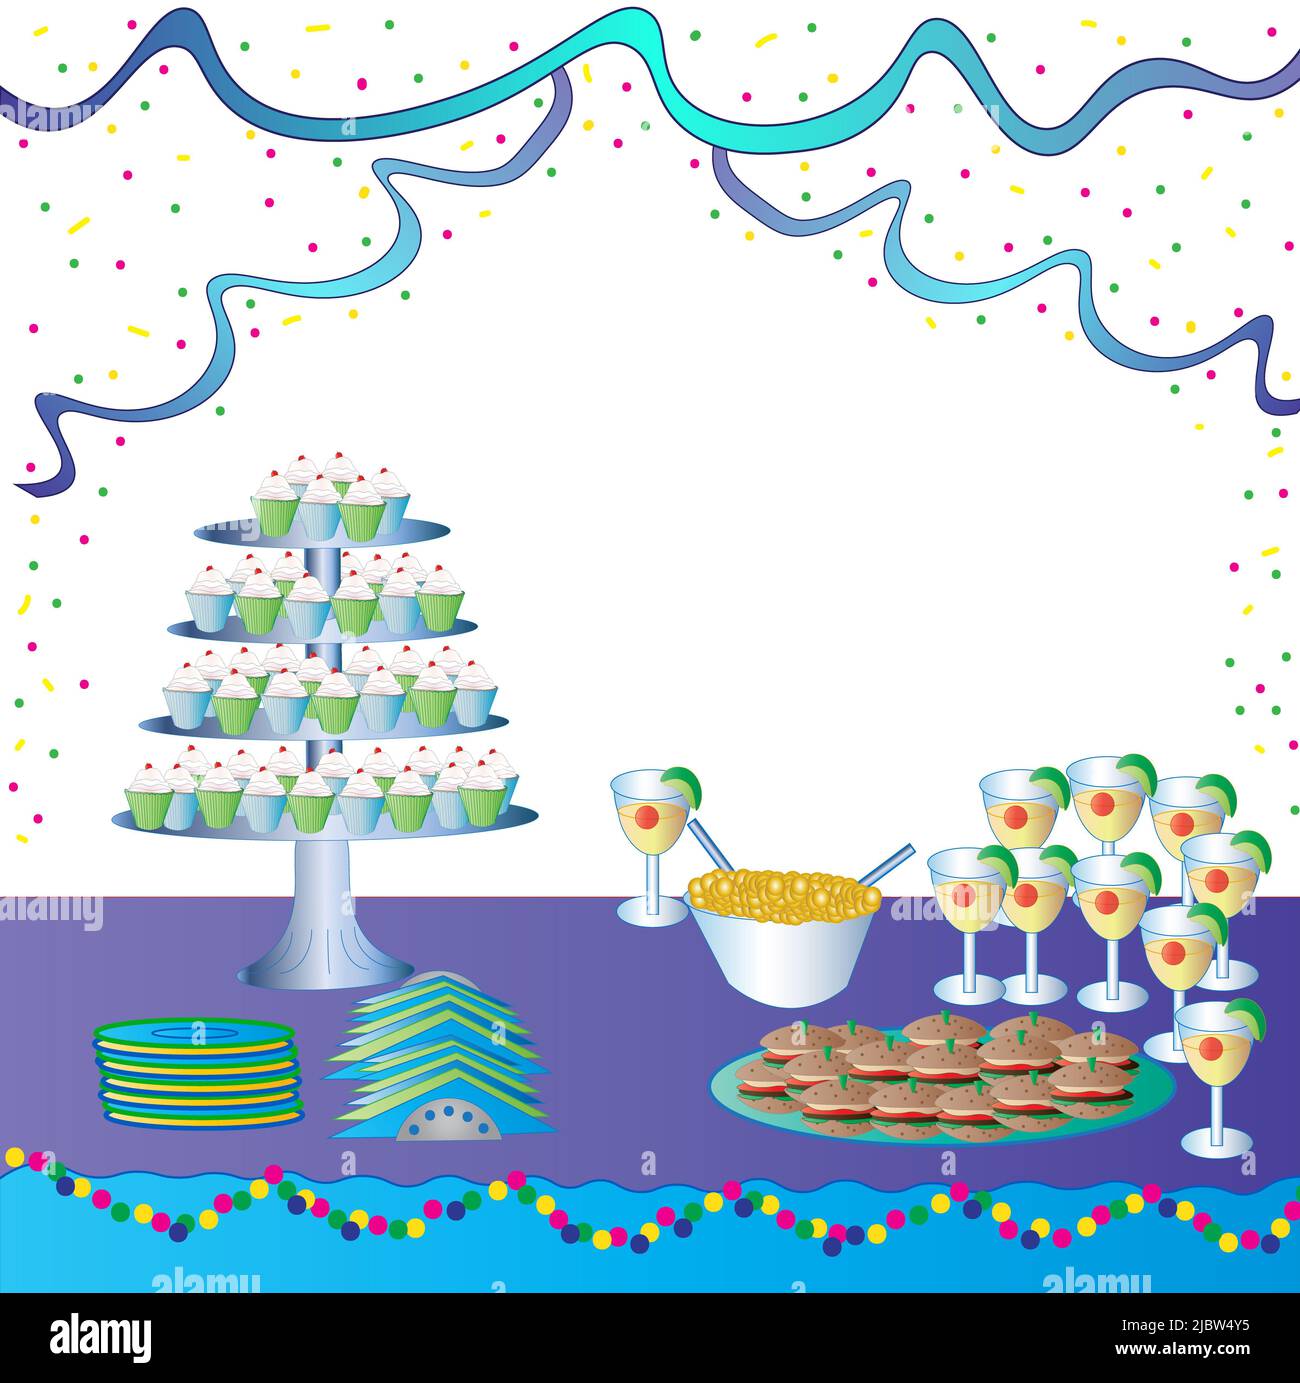 Image de fête graphique comprenant un plateau à 4 tablettes, des boissons, de la nourriture et des décorations Banque D'Images